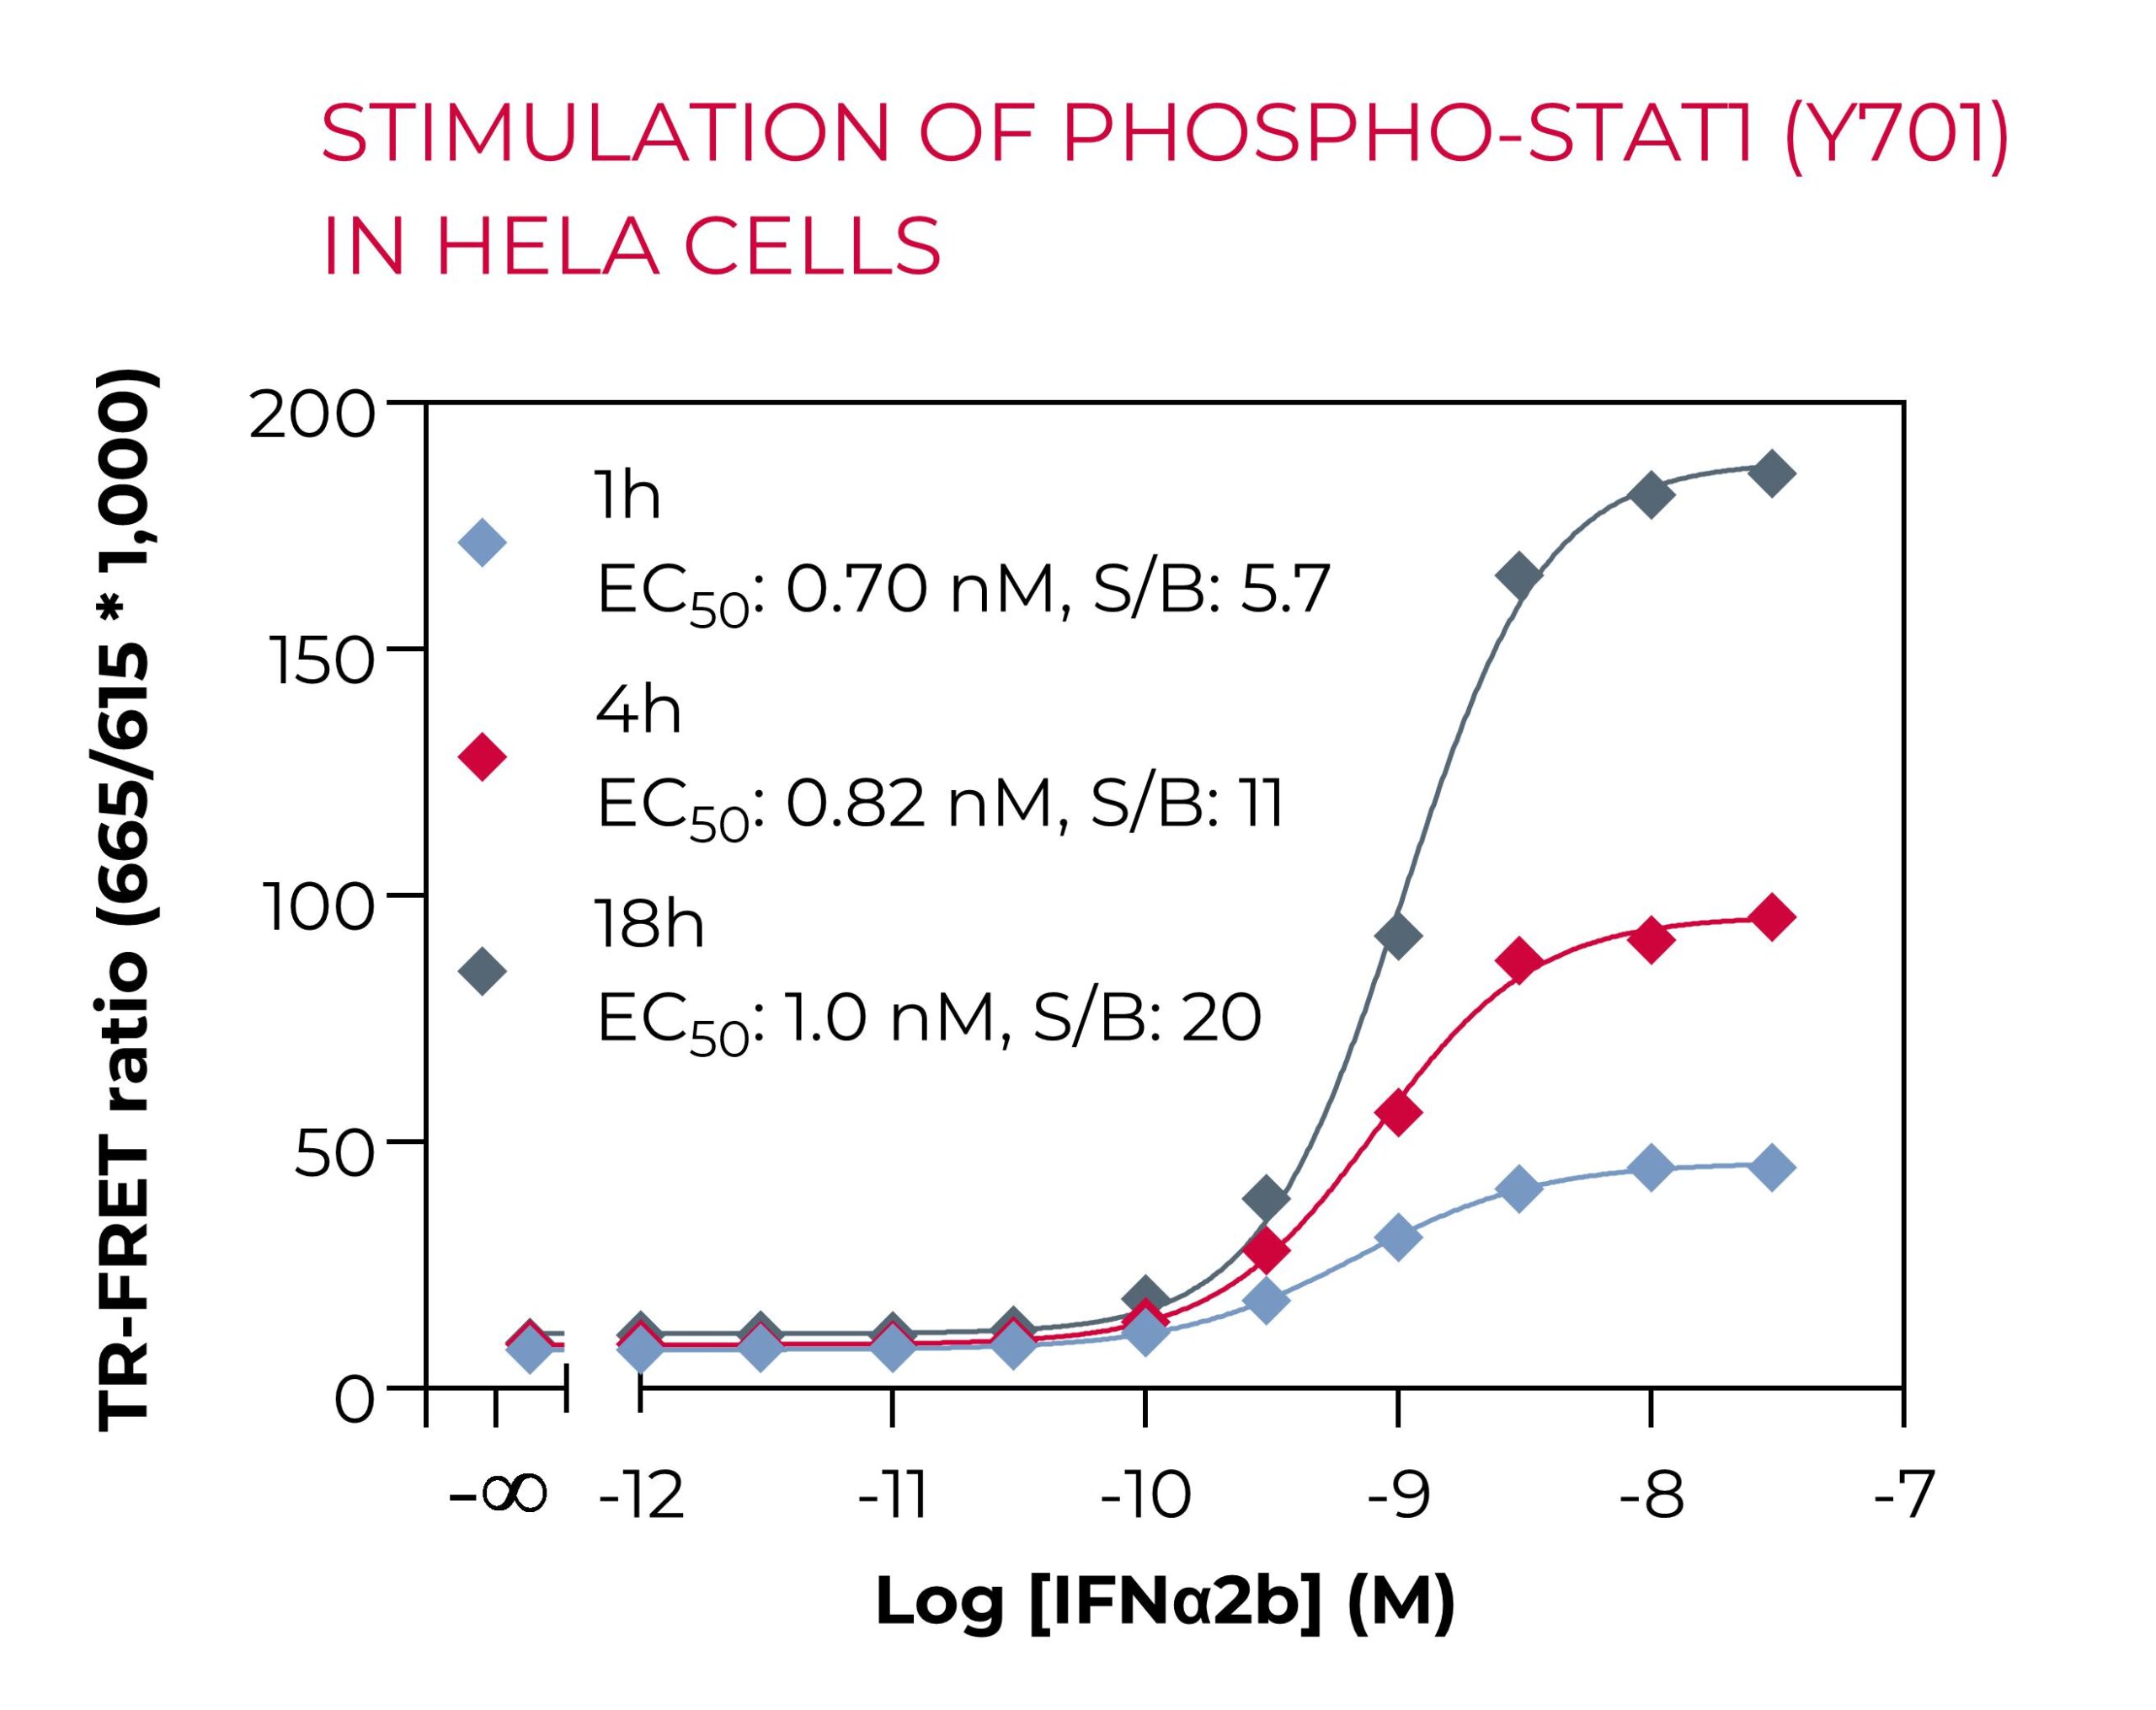 Stimulation of Phospho-STAT1 in HeLa cells